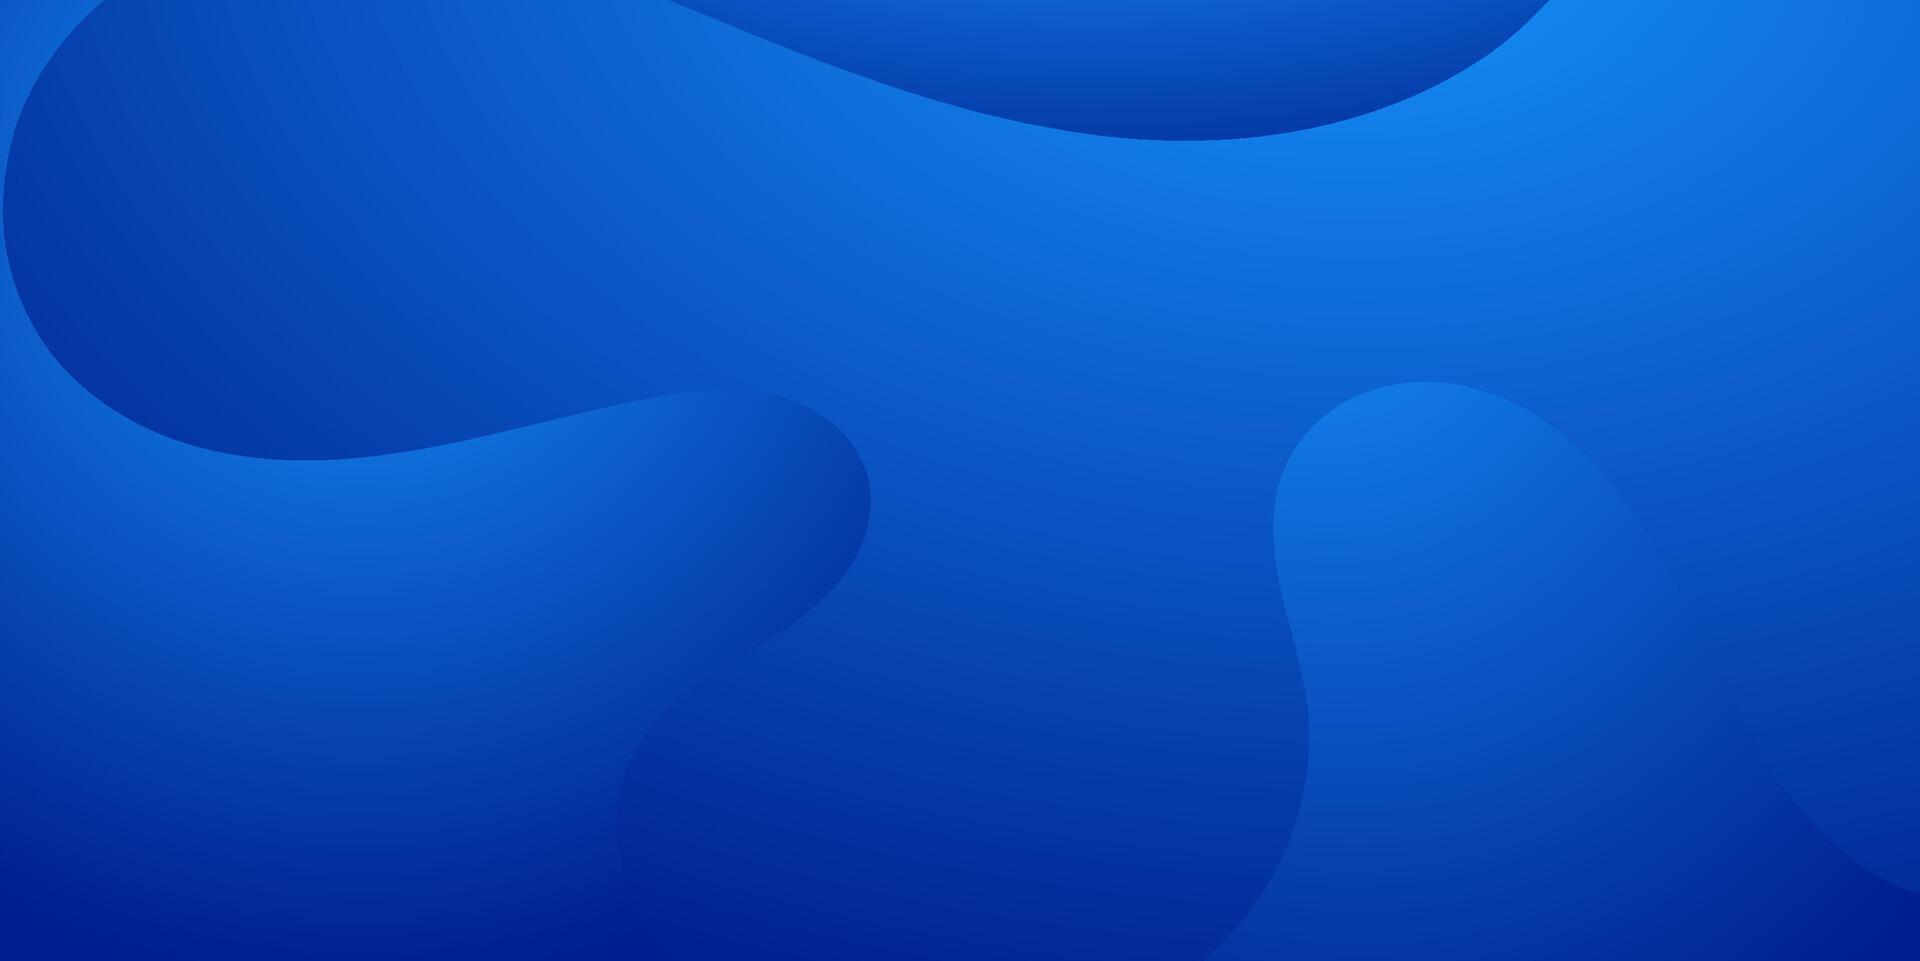 abstrakt elegant Blau Marine Gradient Hintergrund vektor